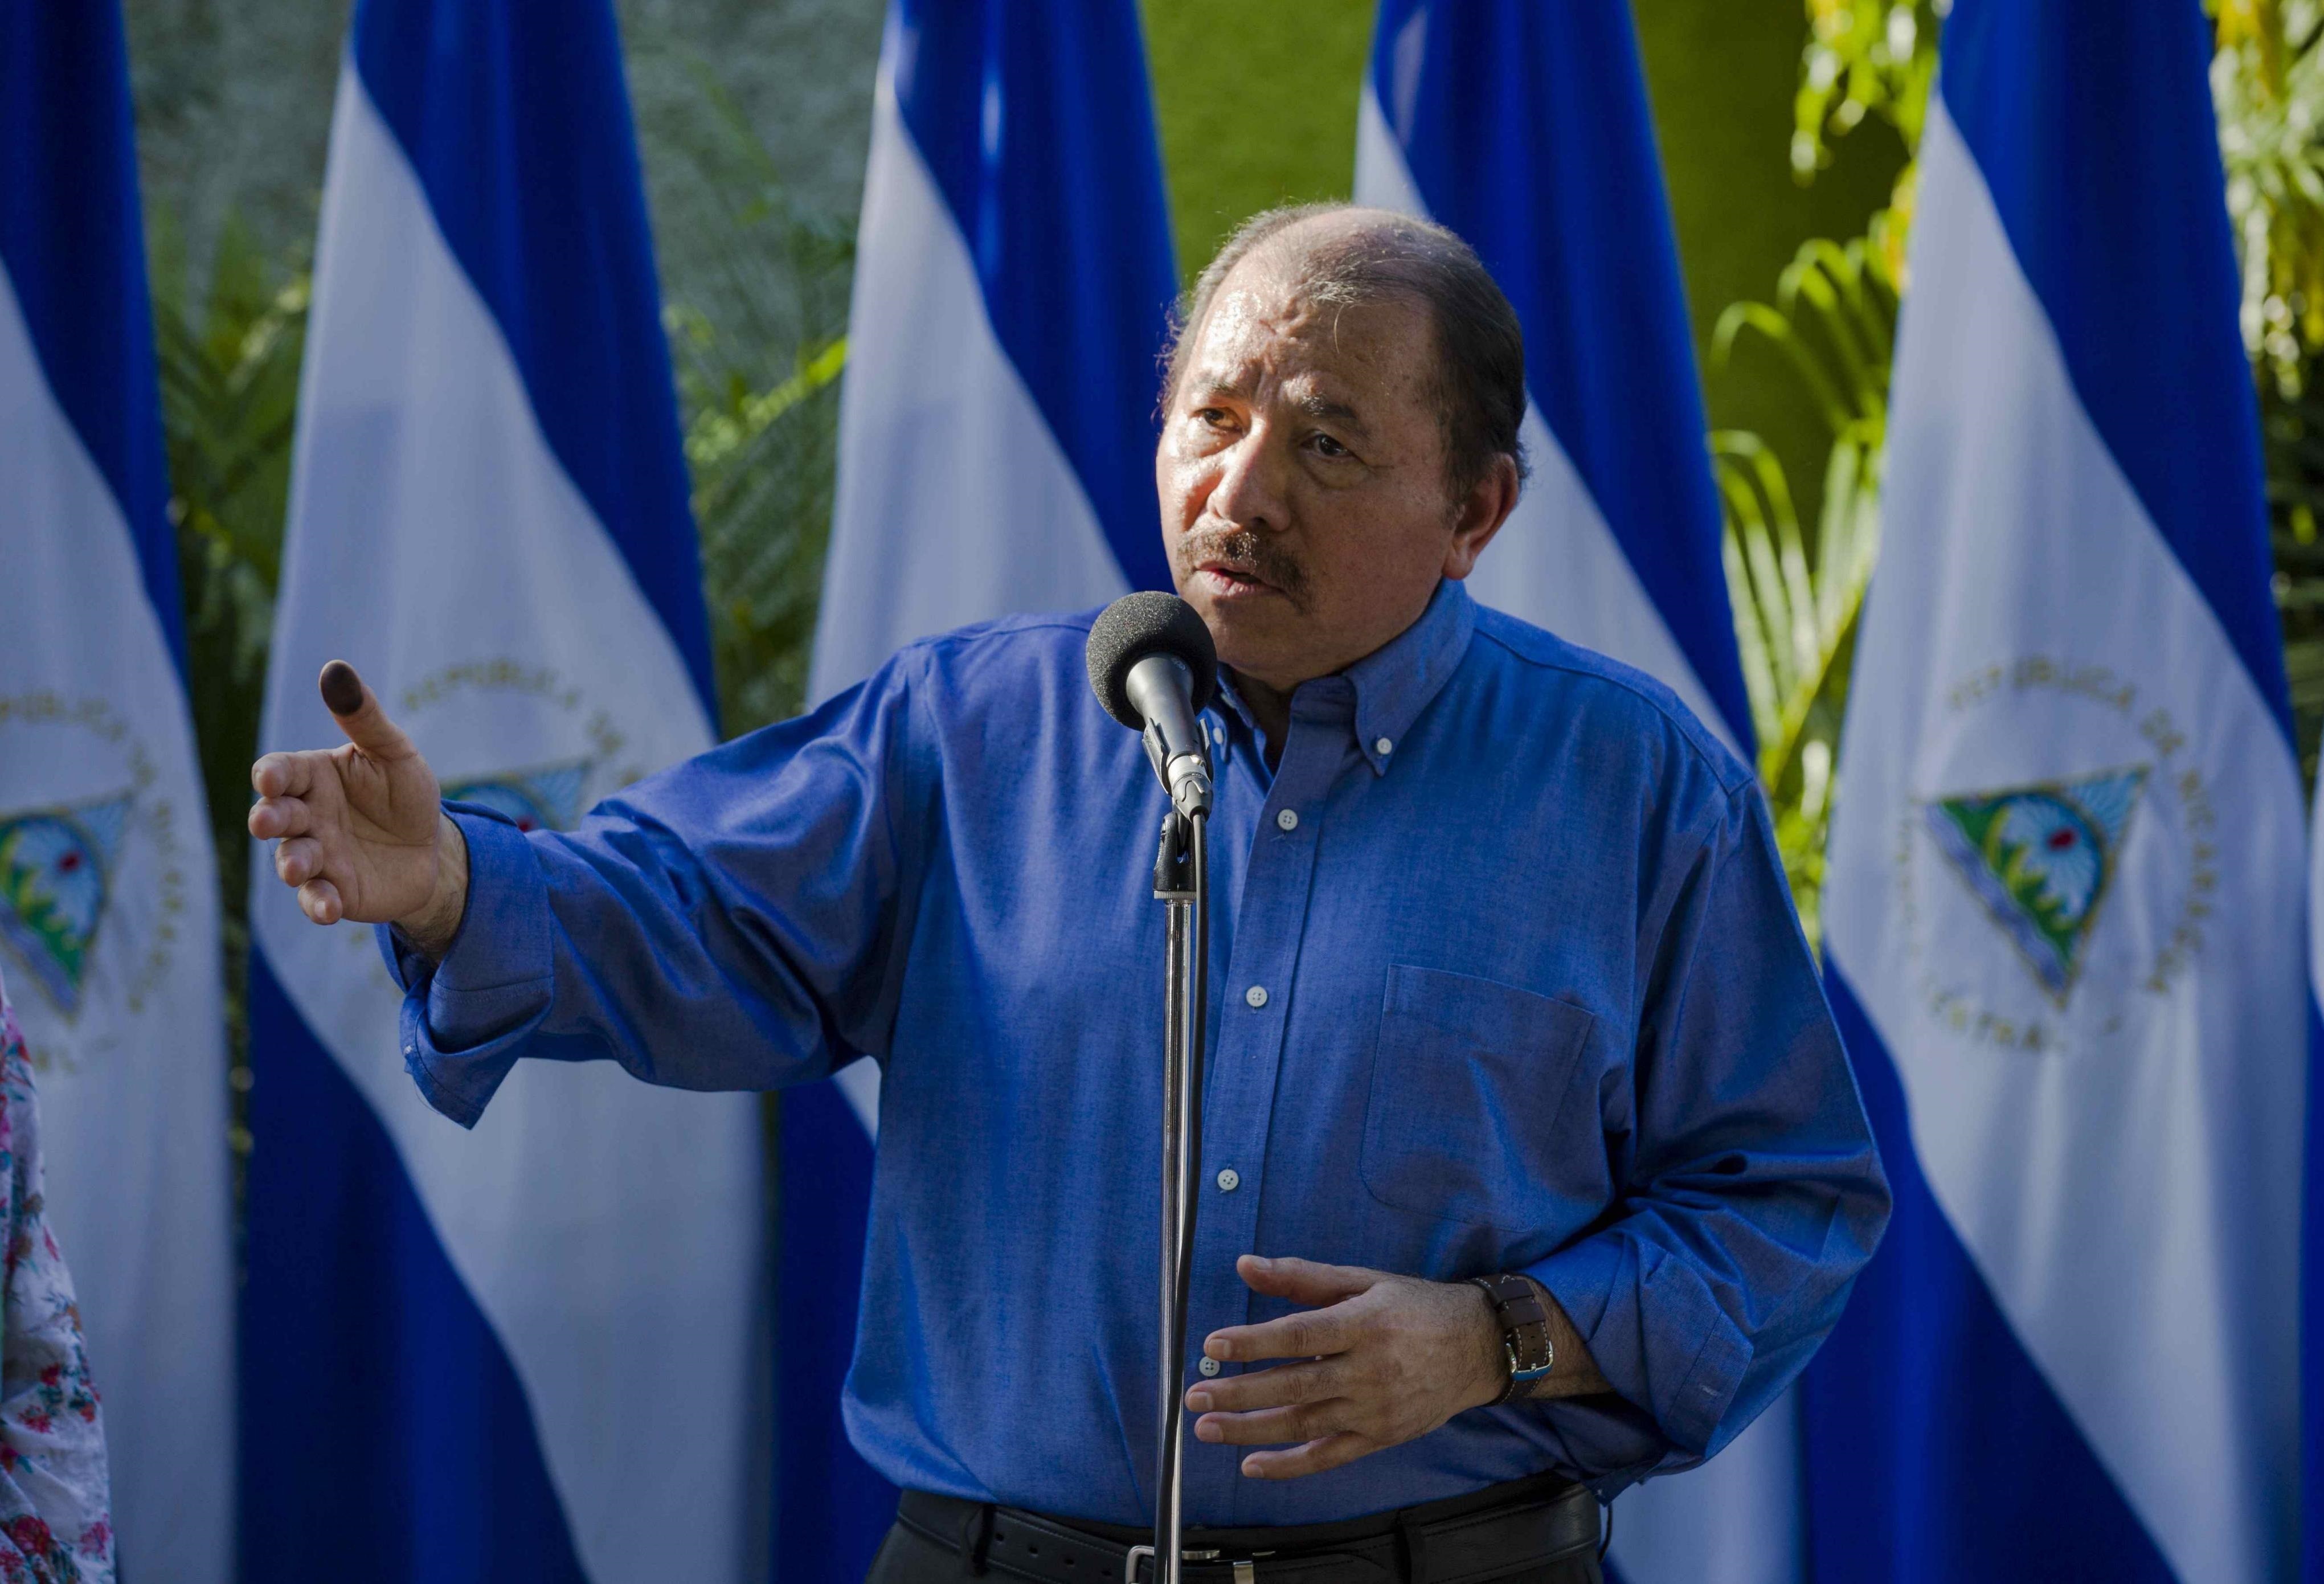 La oposición nicaragüense denuncia que Daniel Ortega busca evitar la participación de las principales figuras opositoras en las elecciones de noviembre (Foto: EFE)
